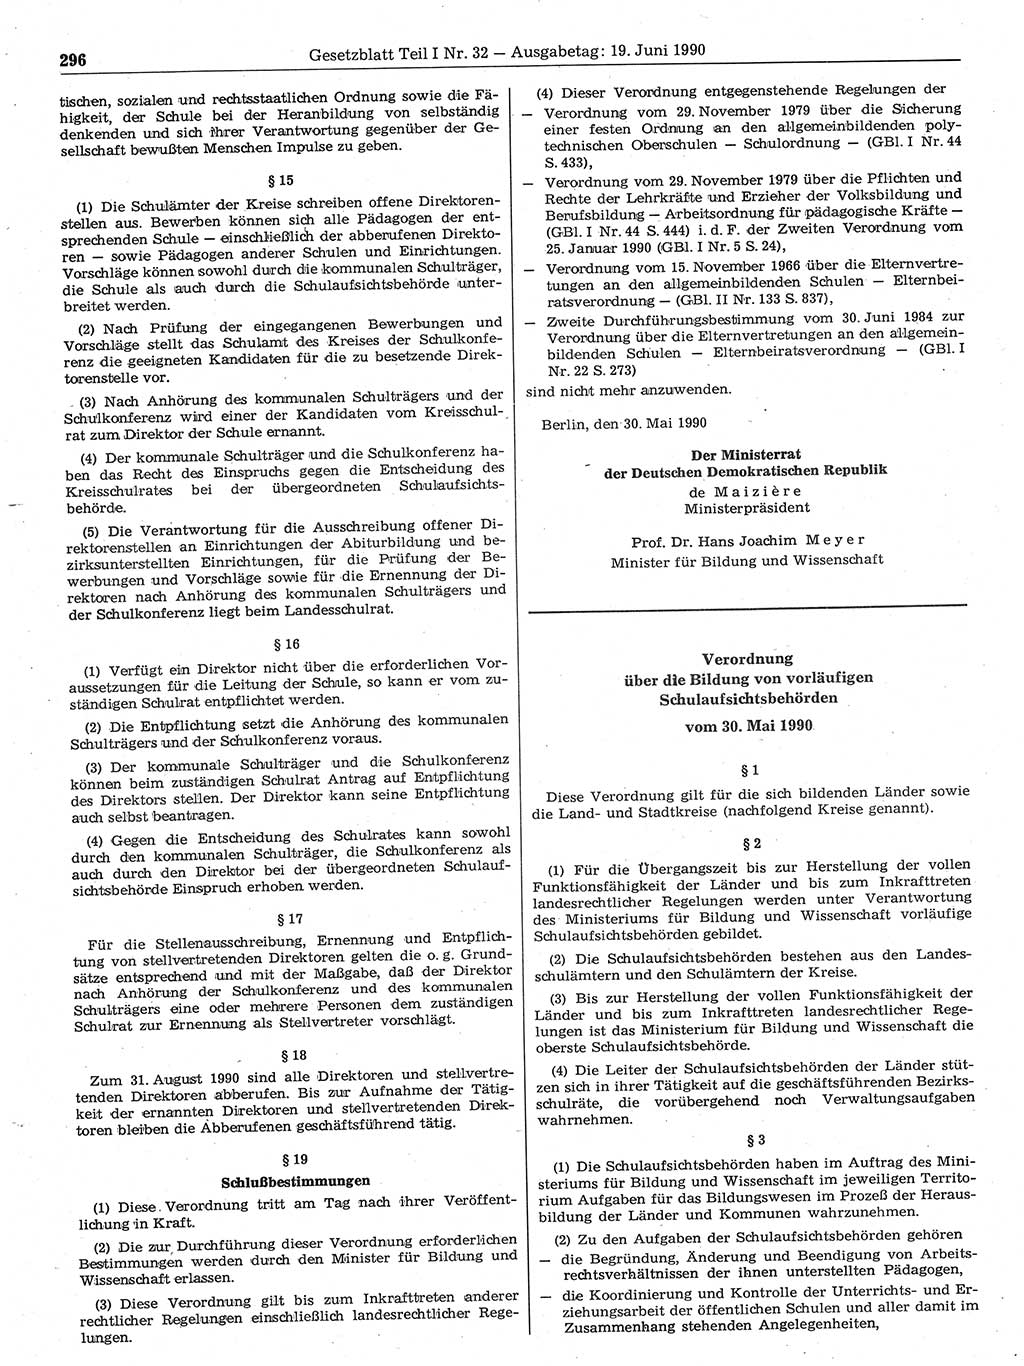 Gesetzblatt (GBl.) der Deutschen Demokratischen Republik (DDR) Teil Ⅰ 1990, Seite 296 (GBl. DDR Ⅰ 1990, S. 296)